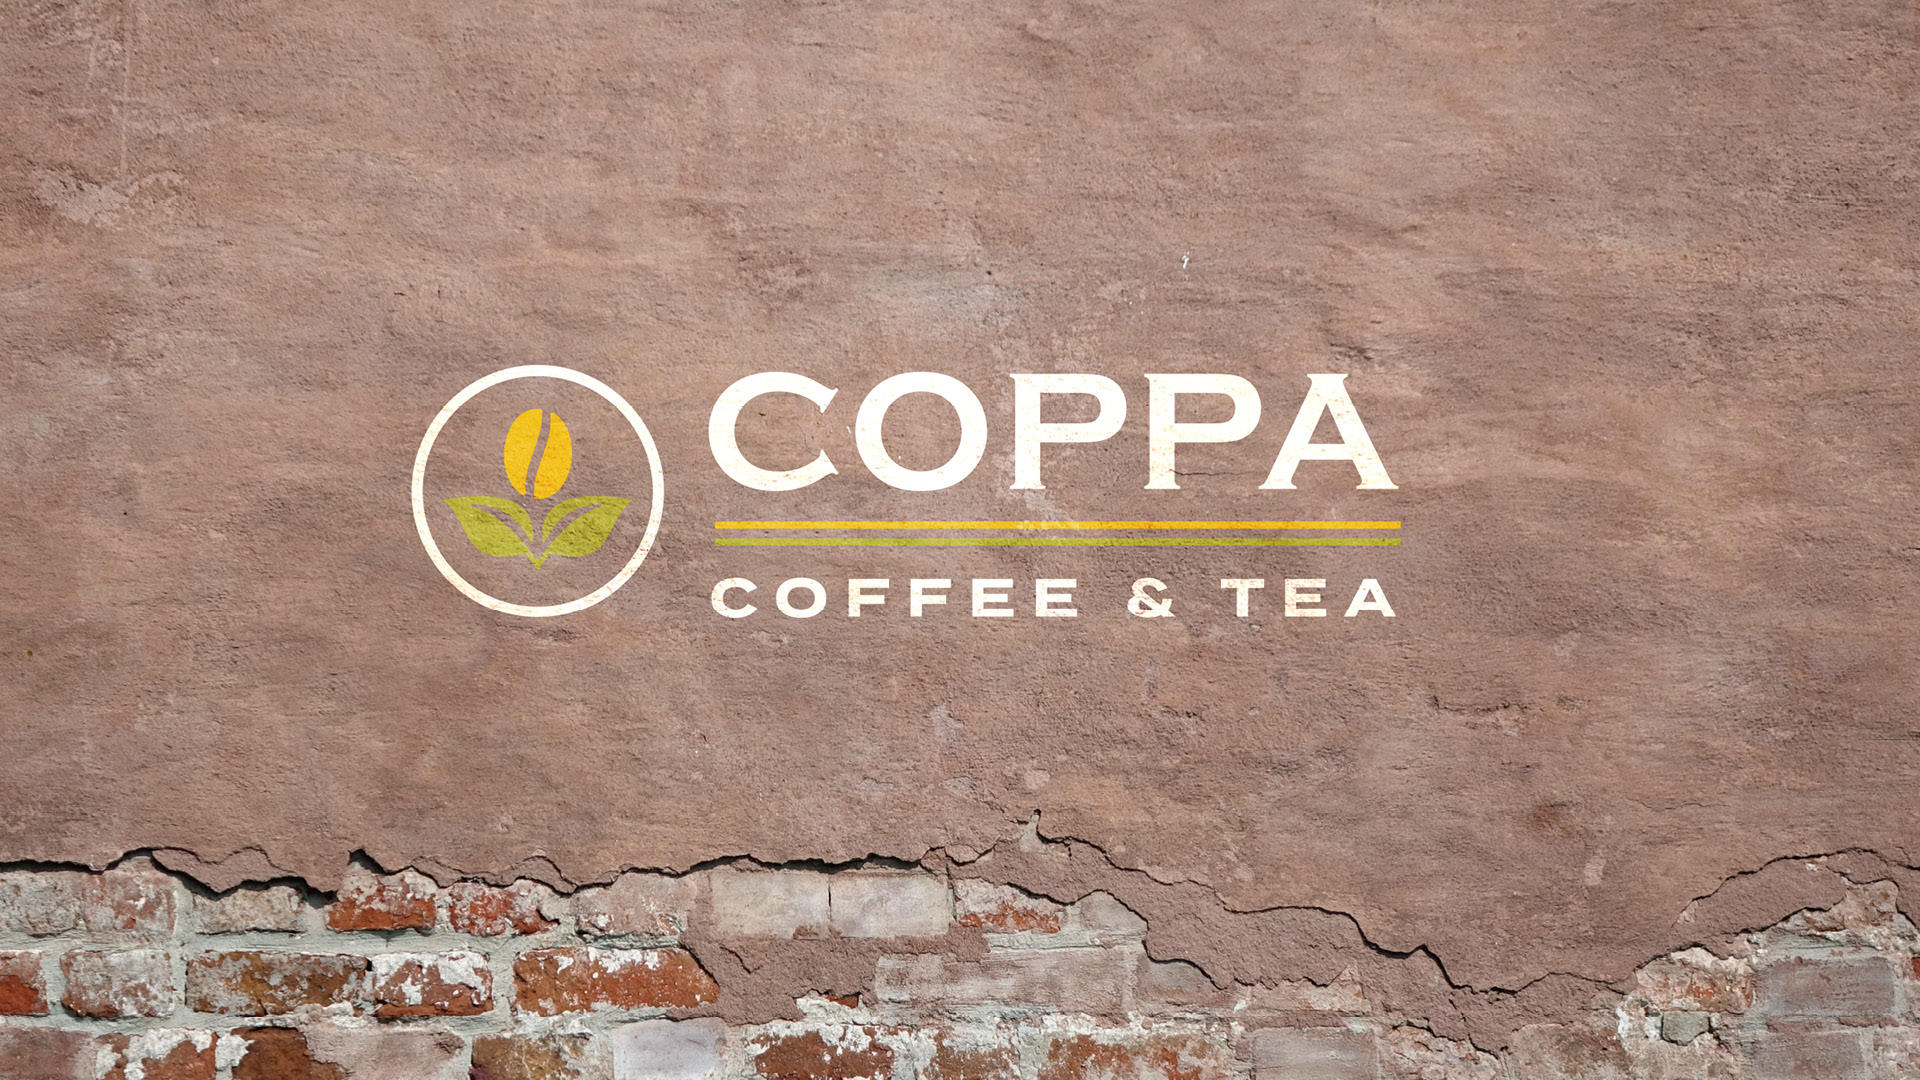 Coppa Coffee and Tea13.jpg